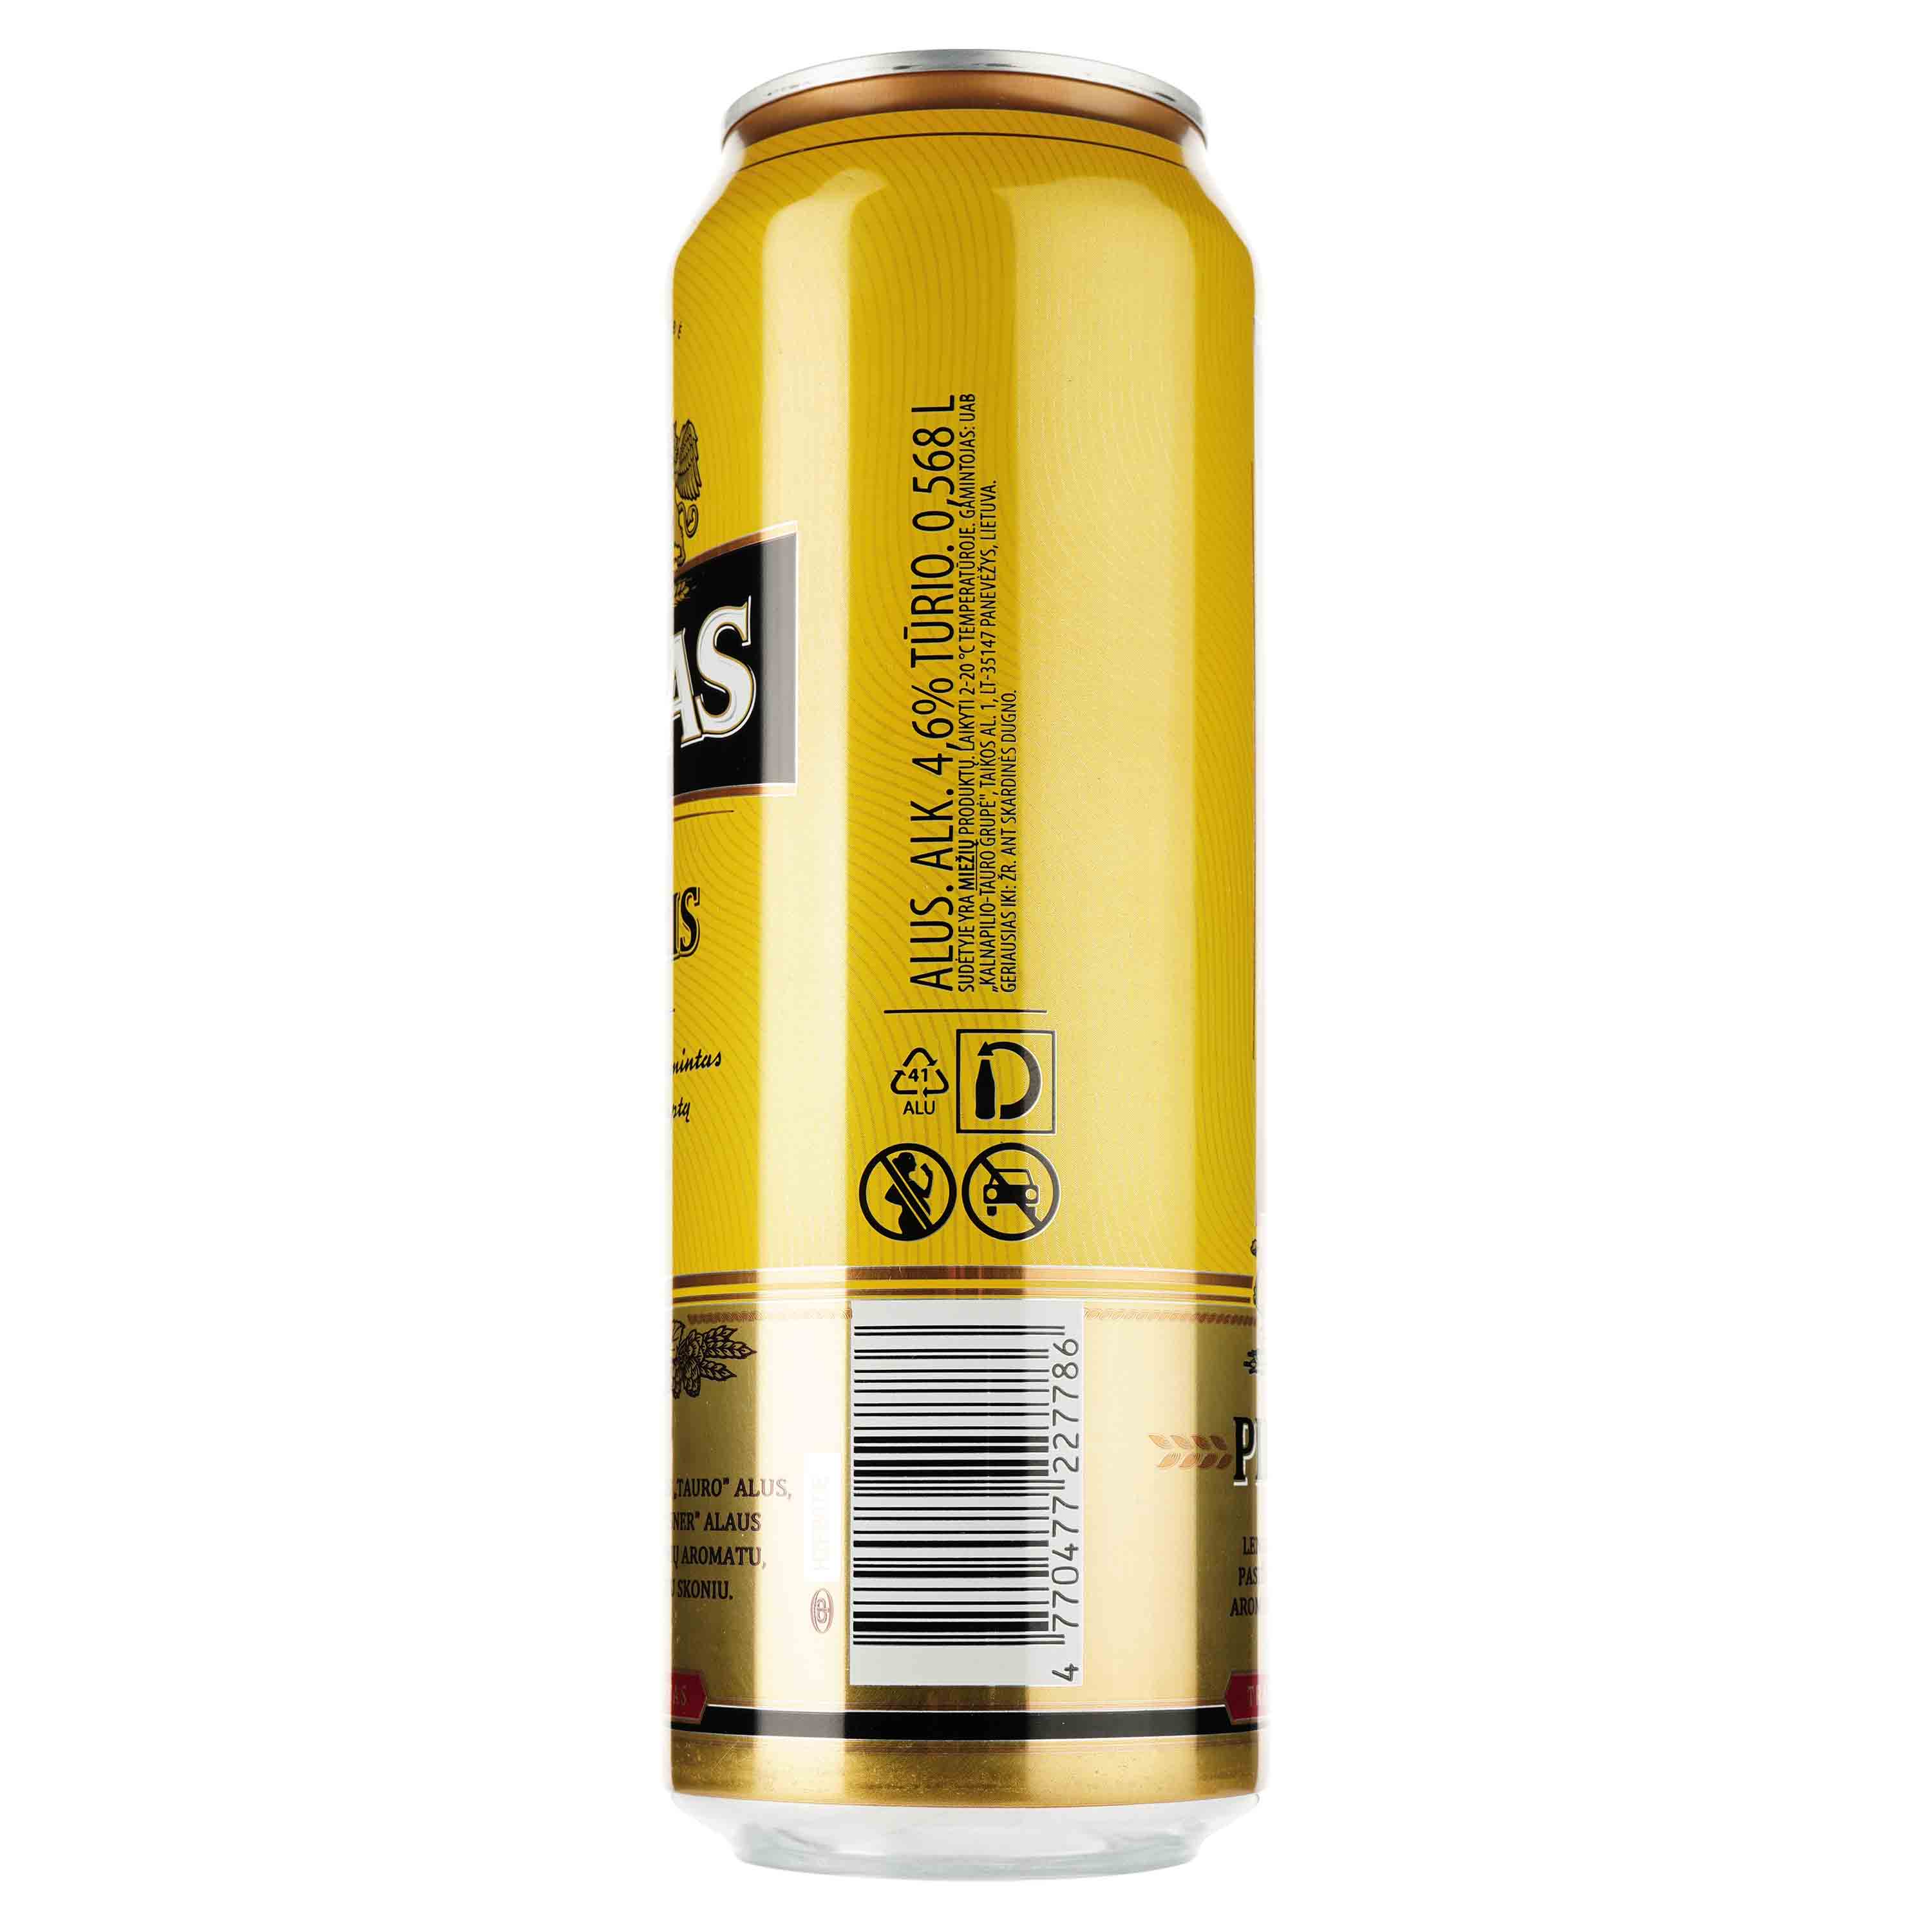 Пиво Tauras Pilsneris світле, 4.6%, з/б, 0.568 л - фото 2